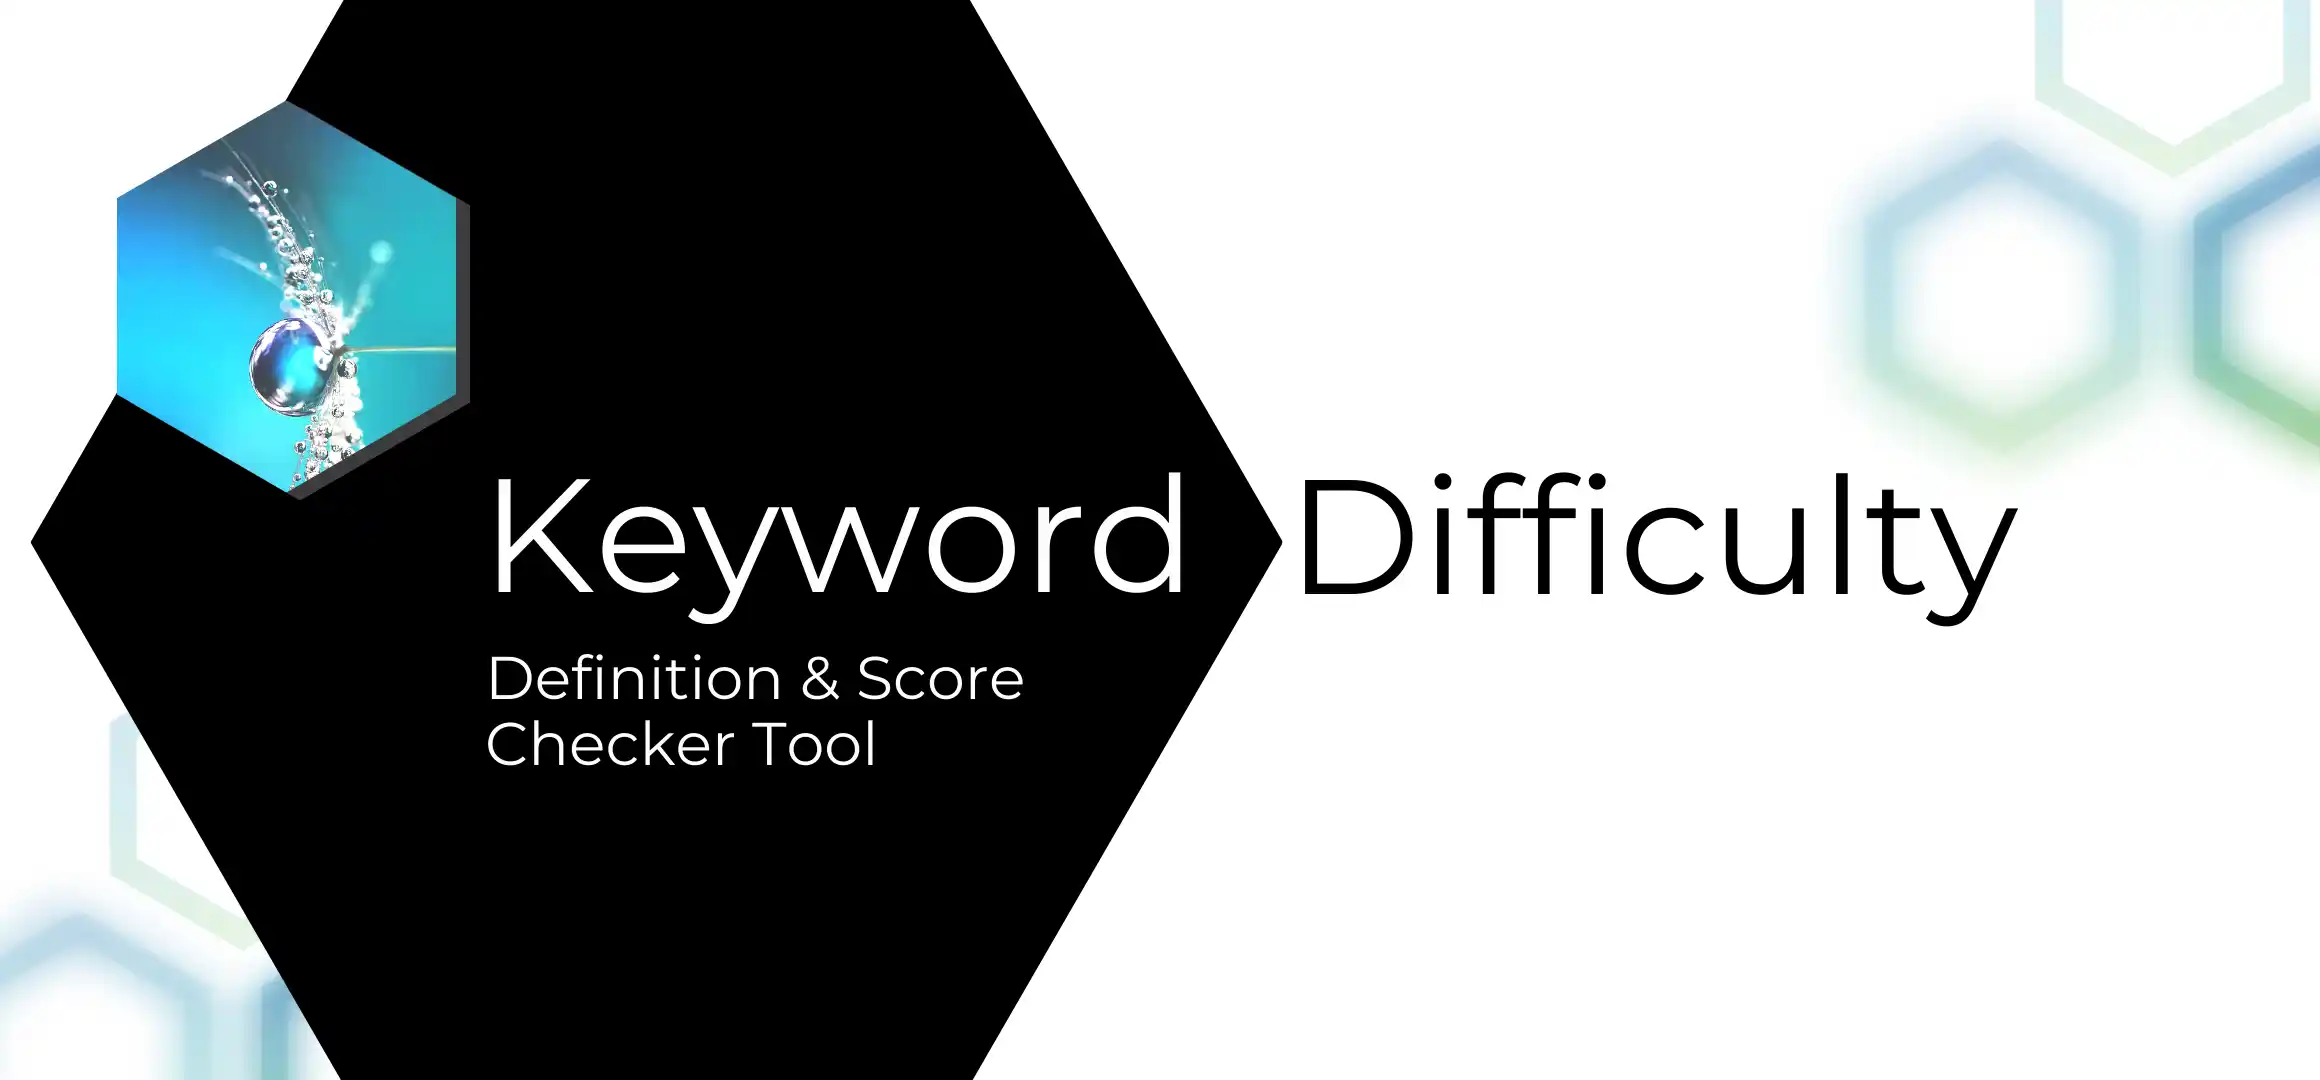 Keyword difficulty